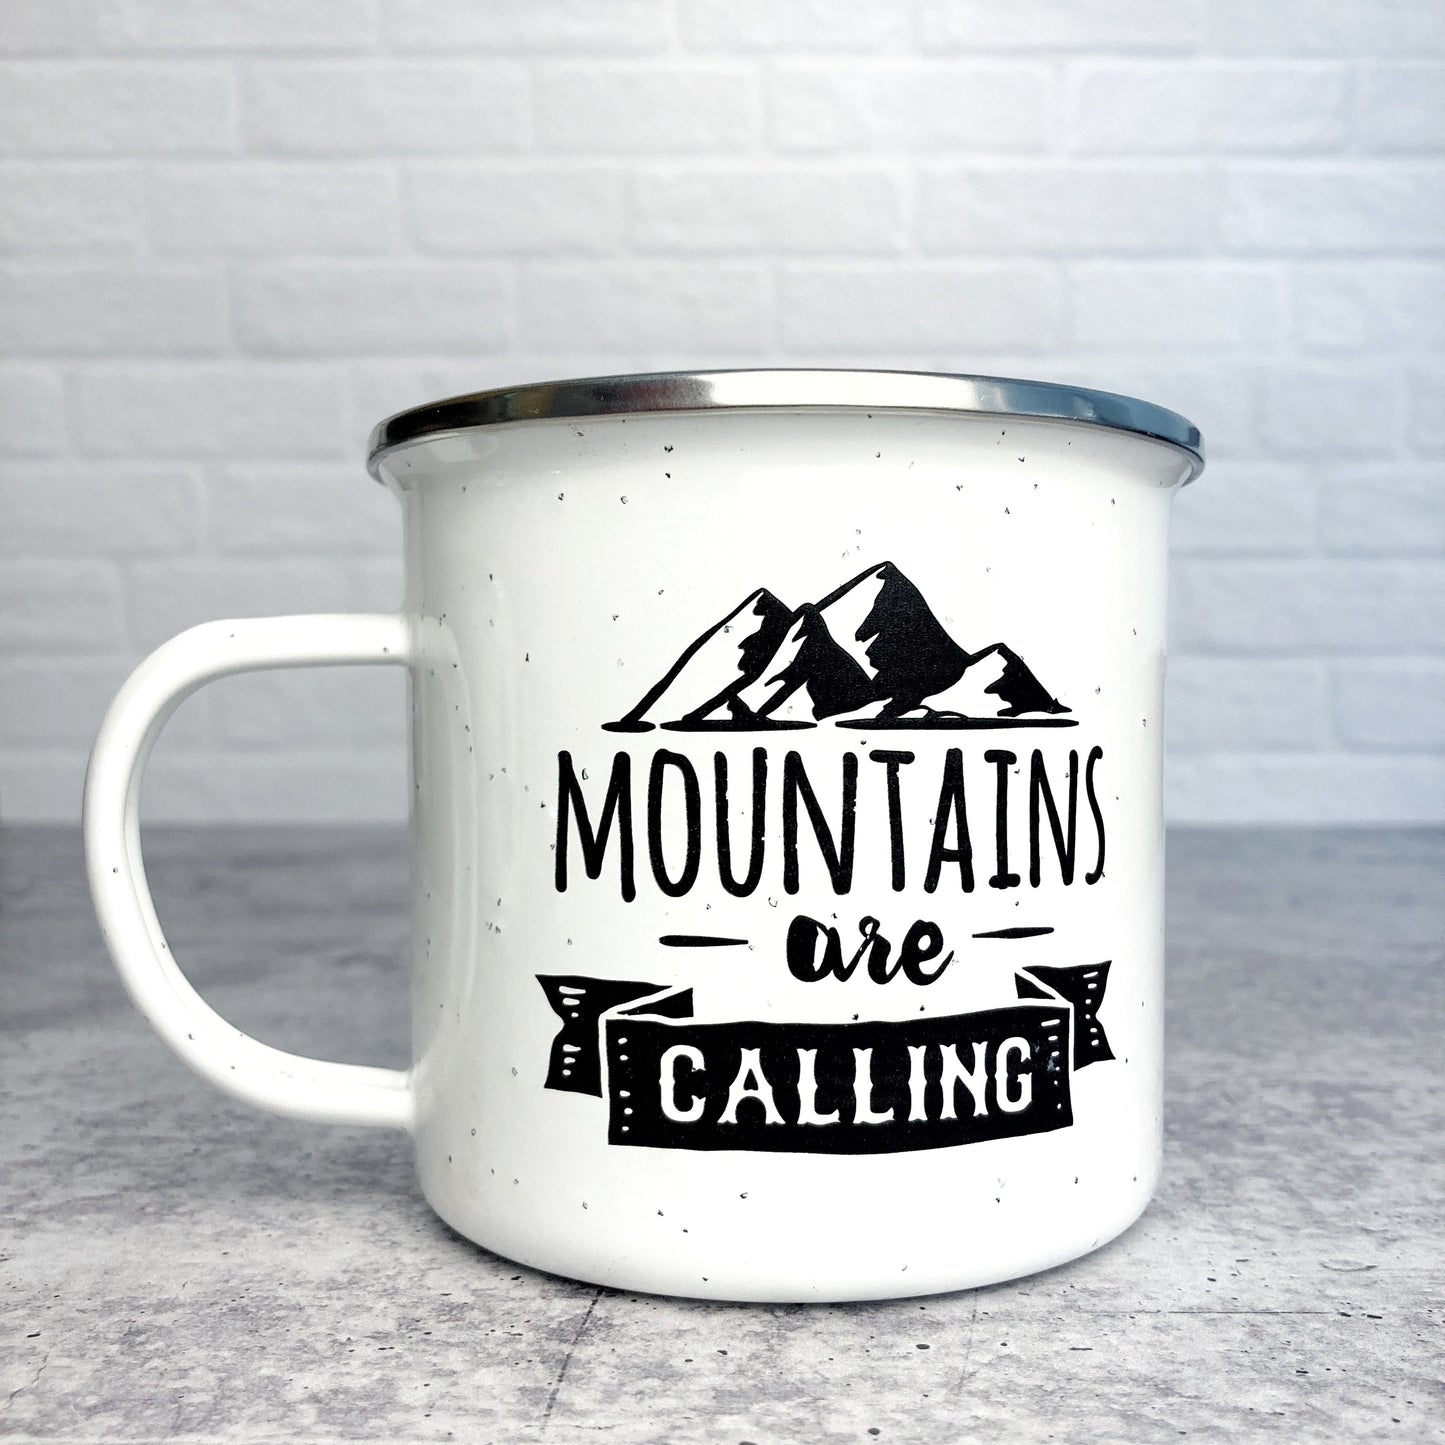 Mountains are calling design on a white enamel mug